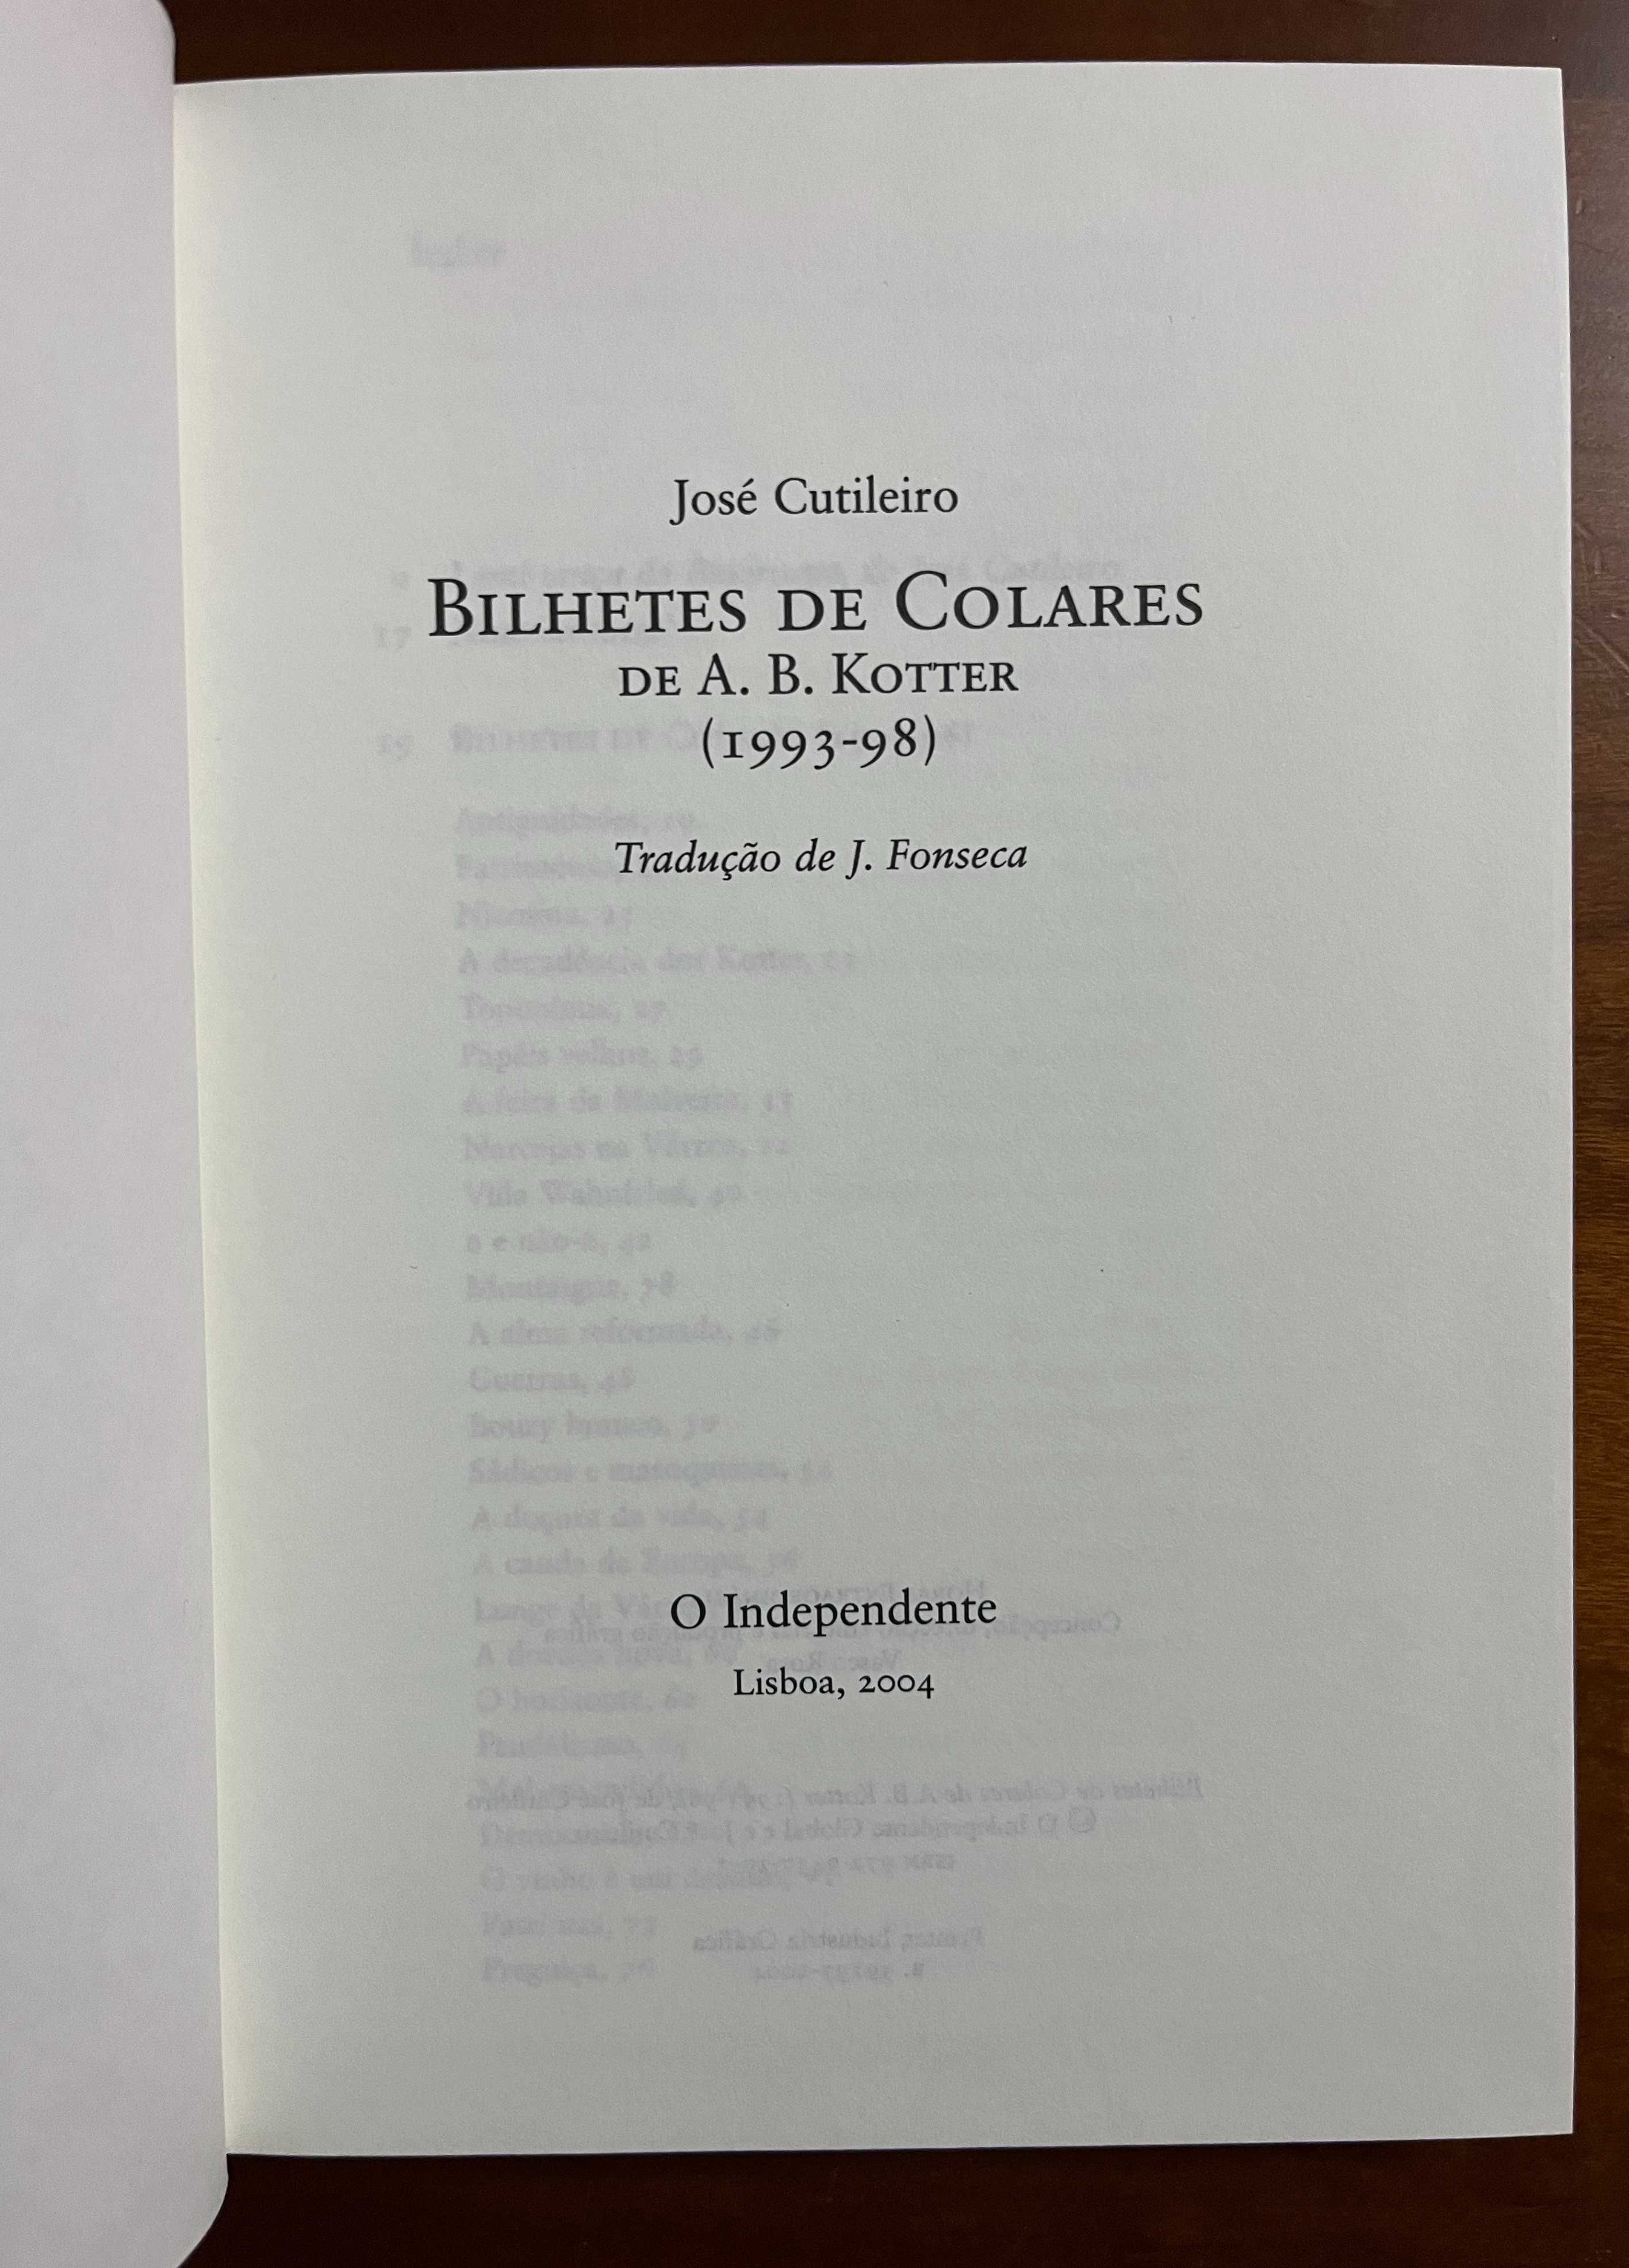 "Bilhetes de Colares" de A. B. Kotter